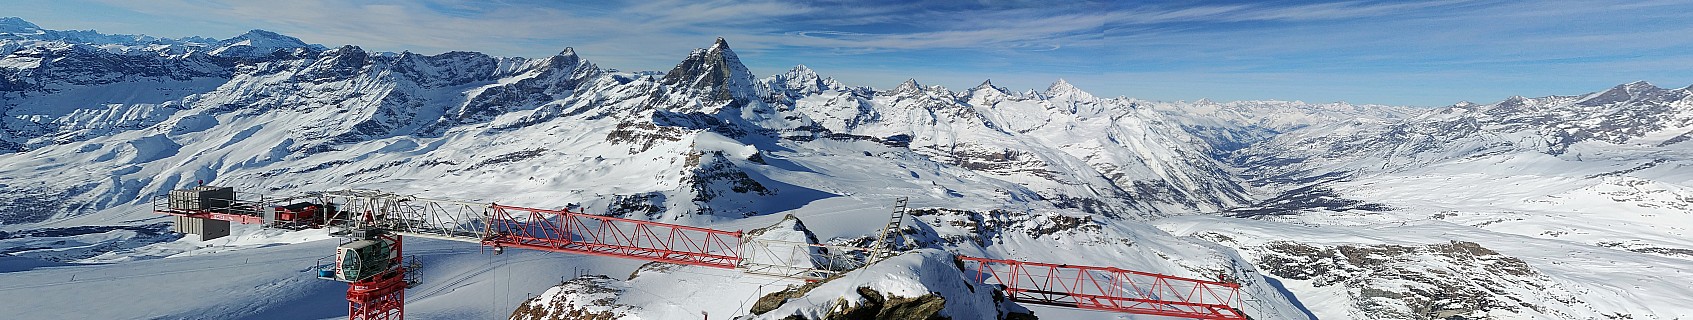 2018-01-30 14.21.46 LG6 Simon - Matterhorn from Klein Matterhorn lookout_stitch.jpg: 16657x3148, 40924k (2018 Apr 23 19:43)